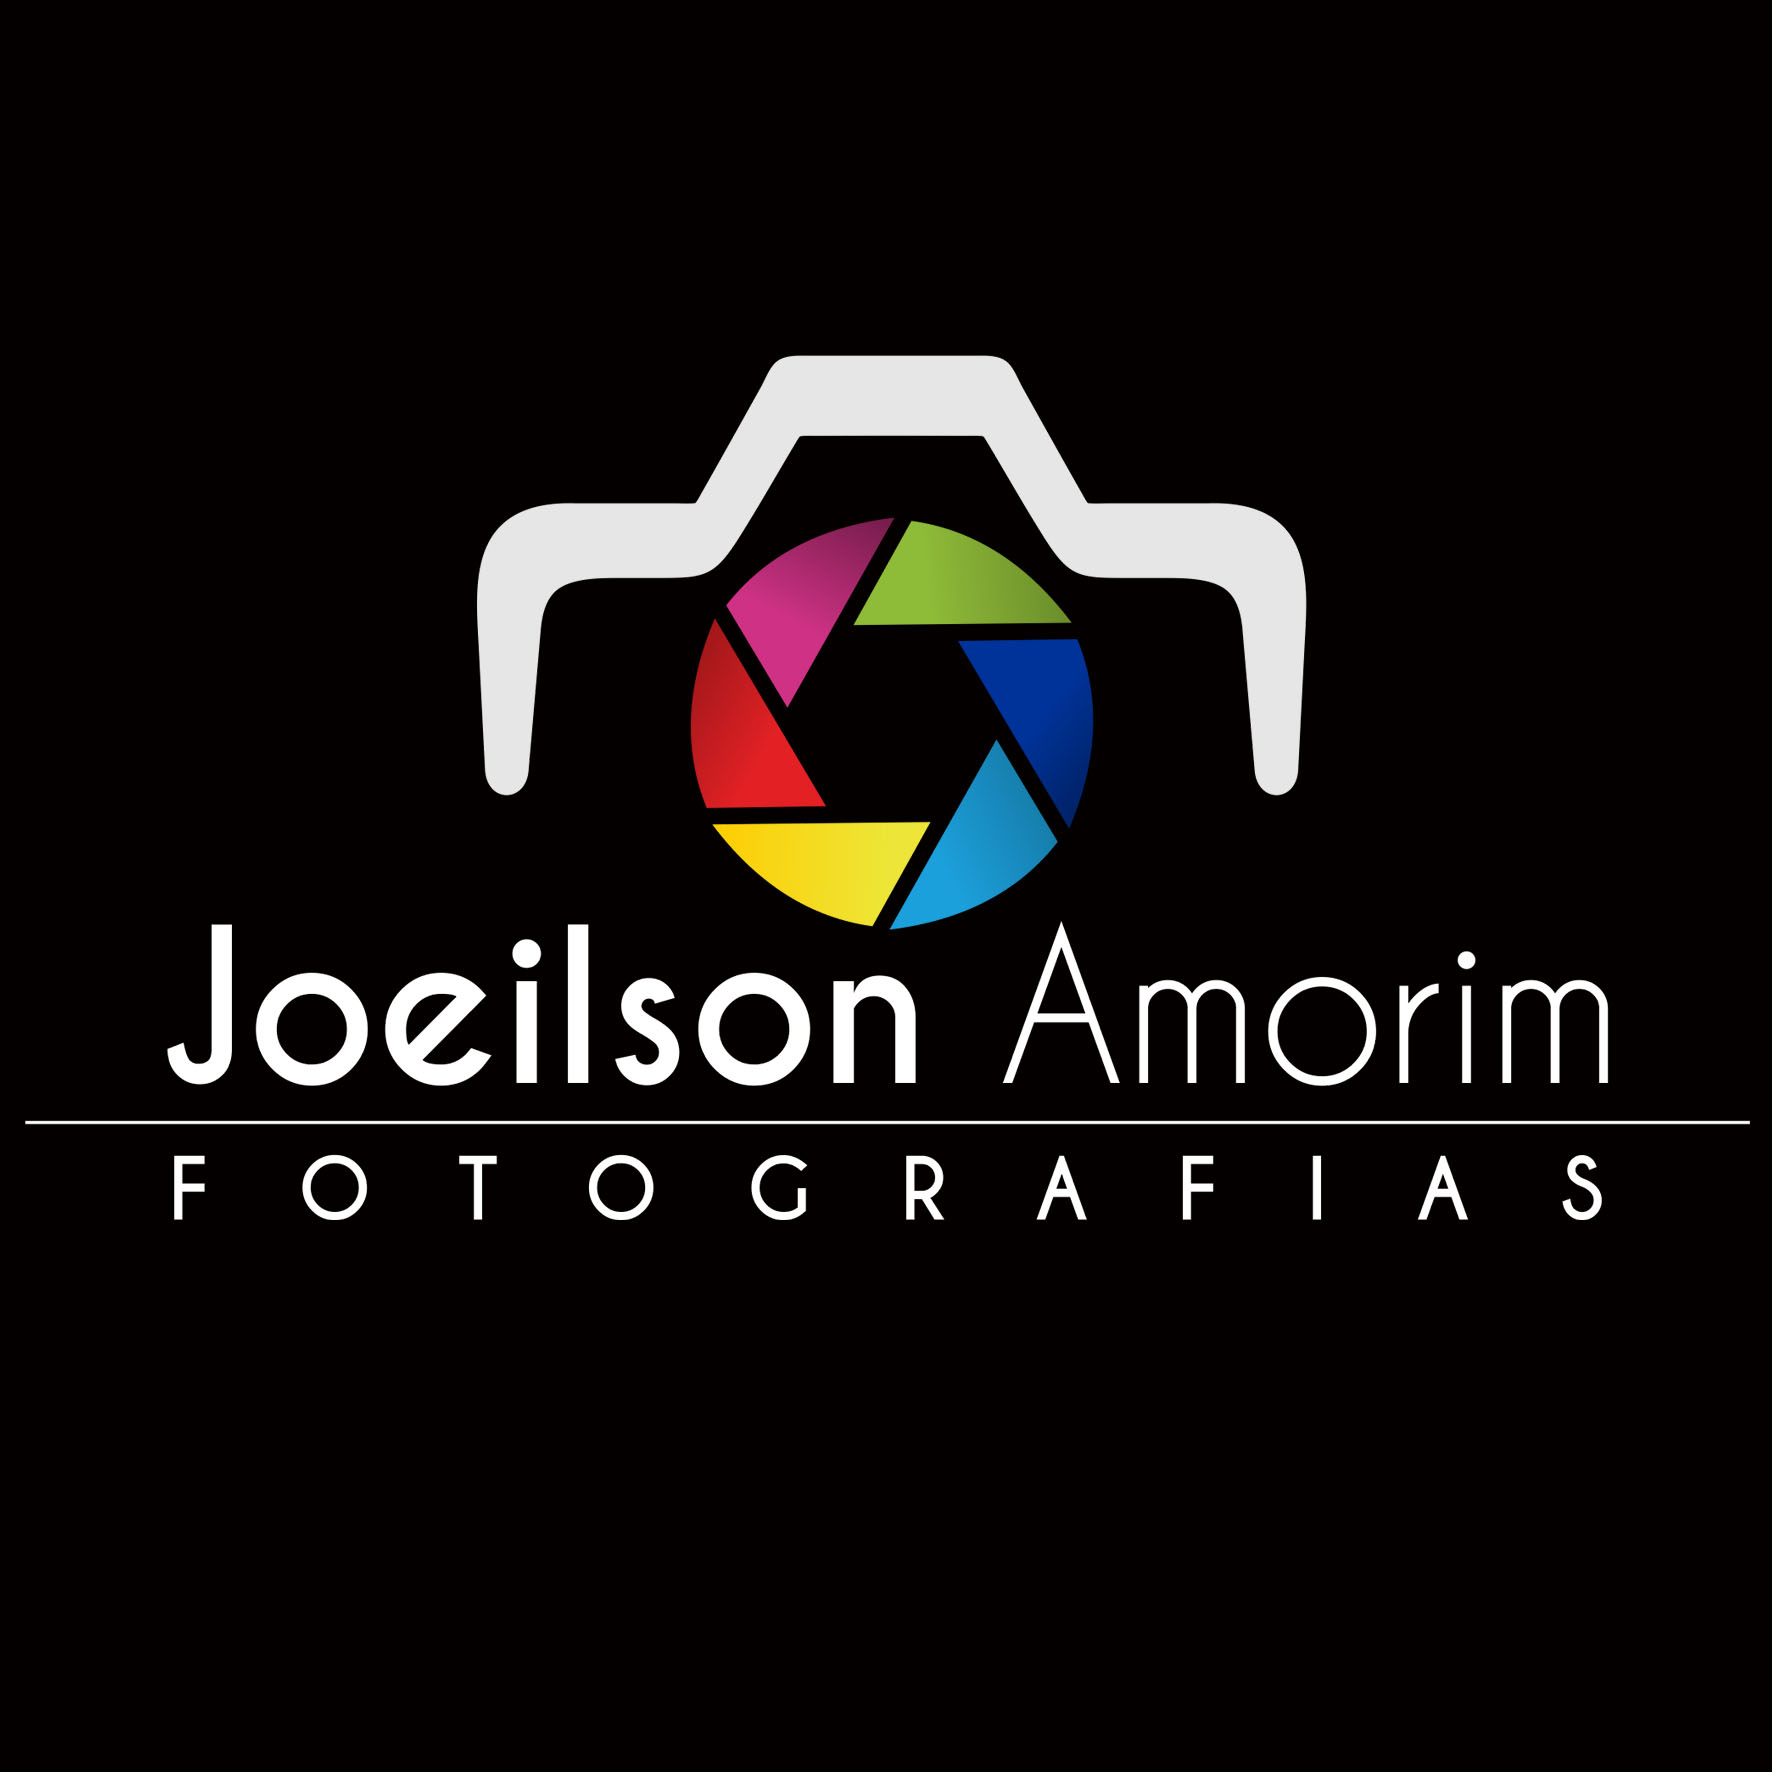 JOEILSON AMORIM FOTOGRAFIAS - Fotografias Industriais e Publicitárias - Tailândia, PA